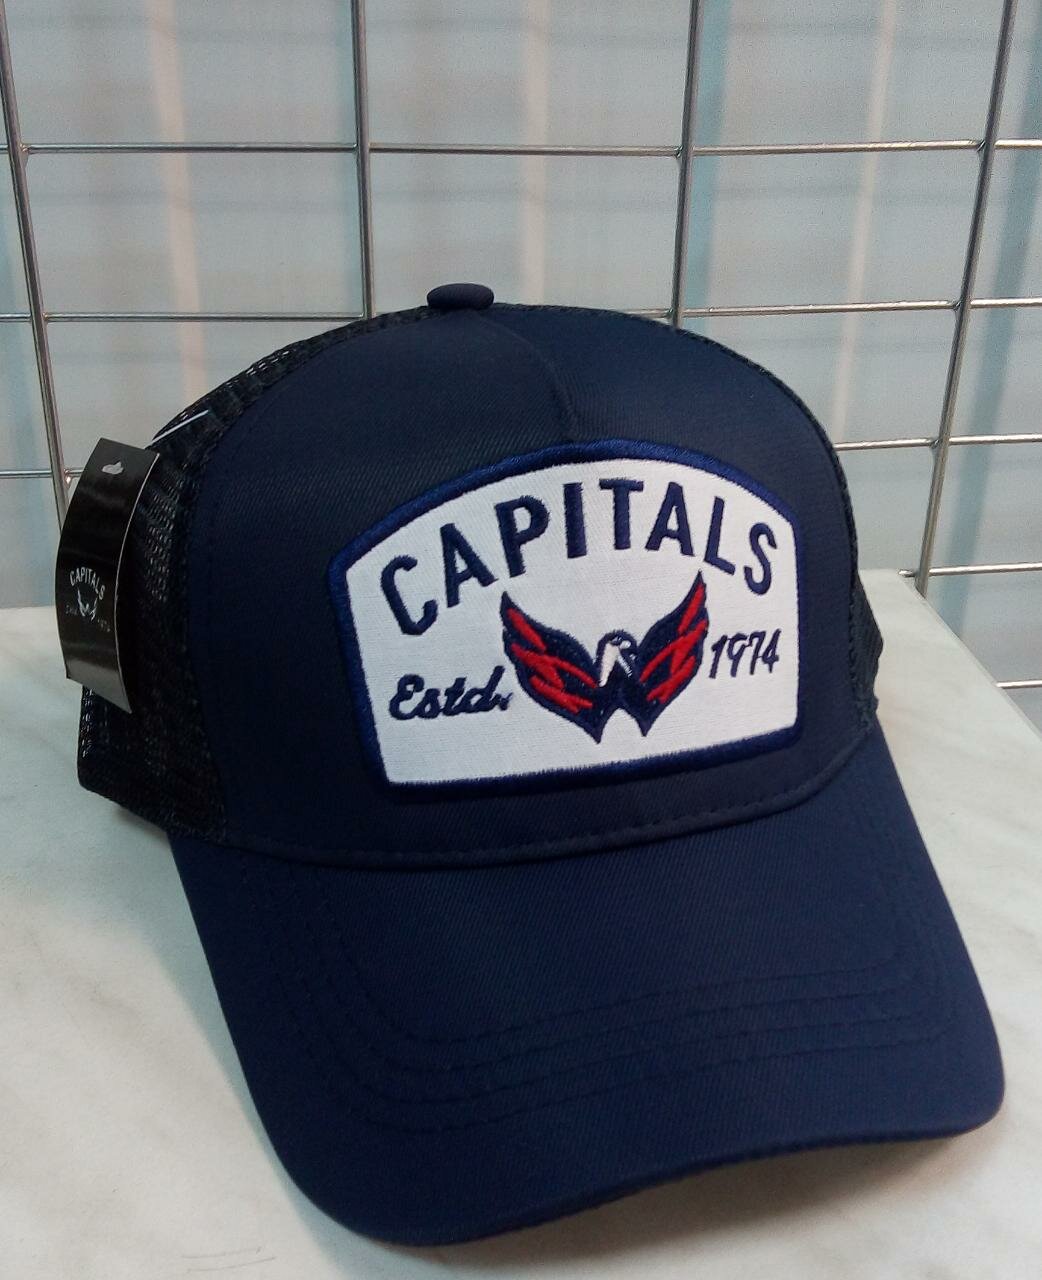 Для хоккея Вашингтон Кэпиталс кепка летняя хоккейного клуба WASHINGTON CAPITALS (США ) бейсболка в сеточку темно-синяя